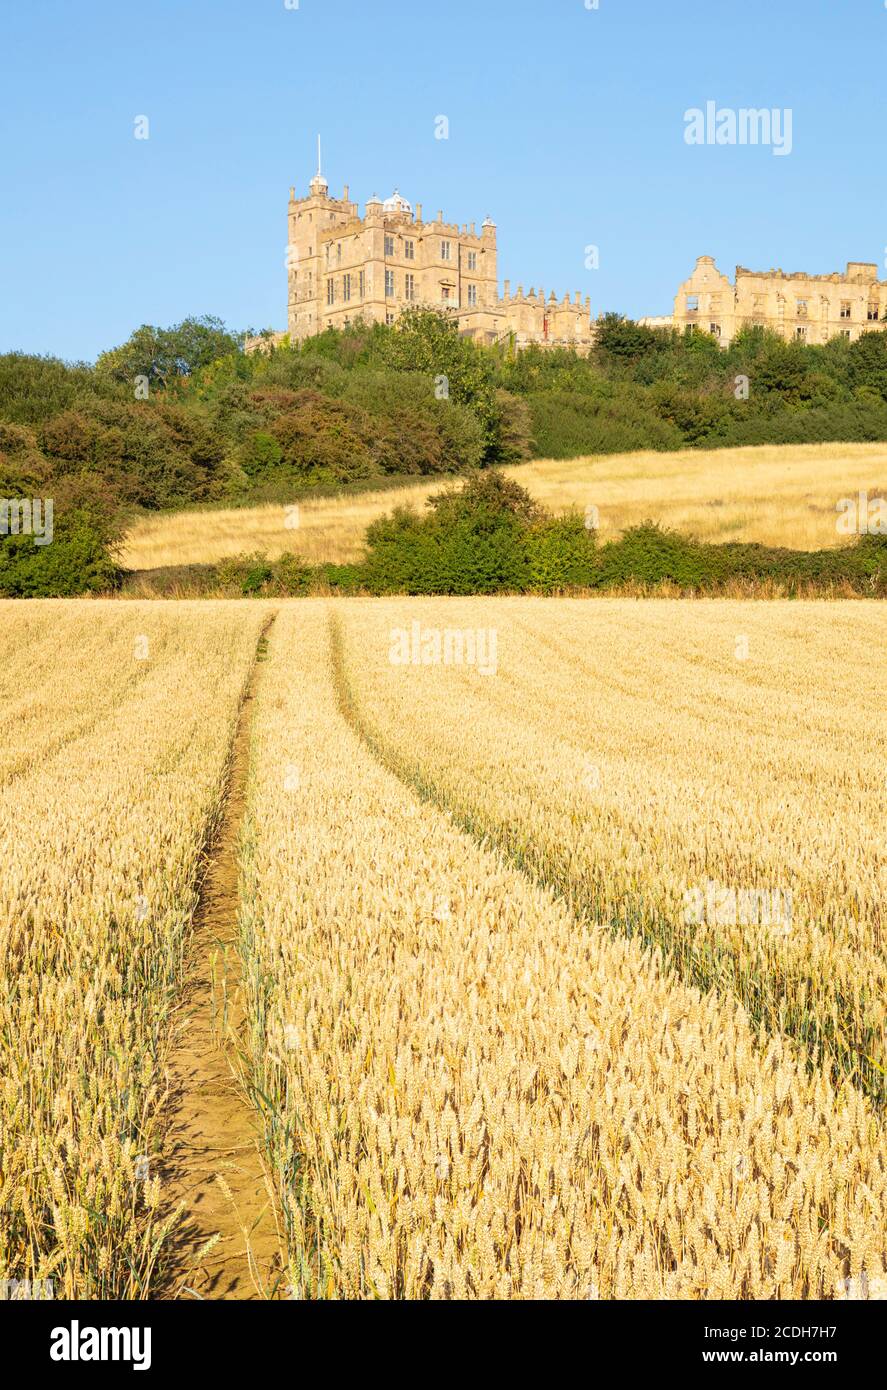 Vue sur le château de Bolsover depuis un champ de maïs, Bolsover, Derbyshire, Angleterre, Royaume-Uni, GB, UK, Europe Banque D'Images